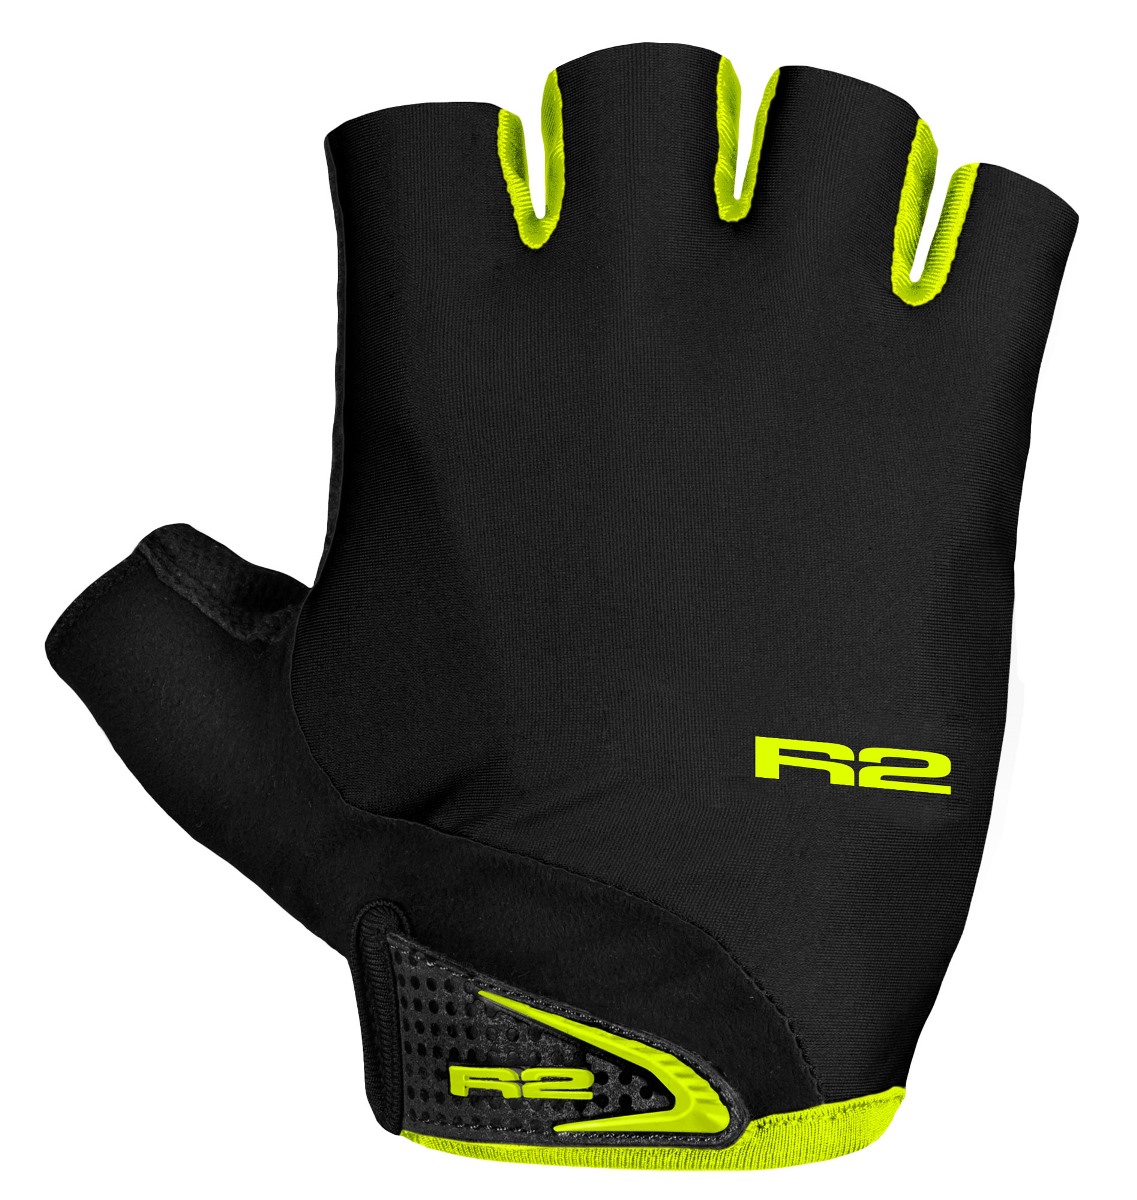 Cyklistické rukavice R2 Riley, čierne/neon žlté